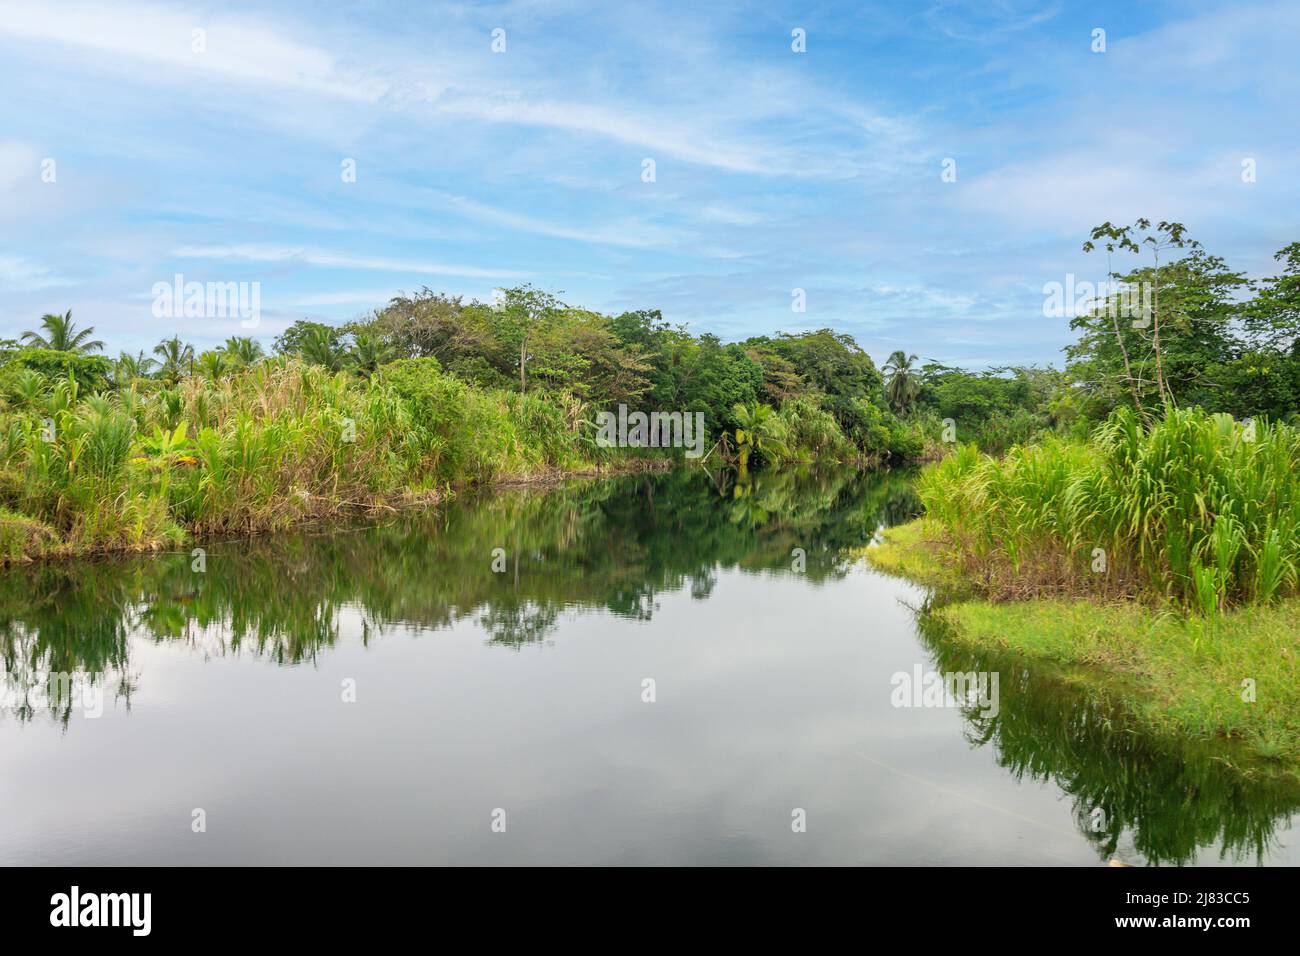 Bosques pluviales y reflexiones fluviales, Provincia de Limón, República de Costa Rica Foto de stock